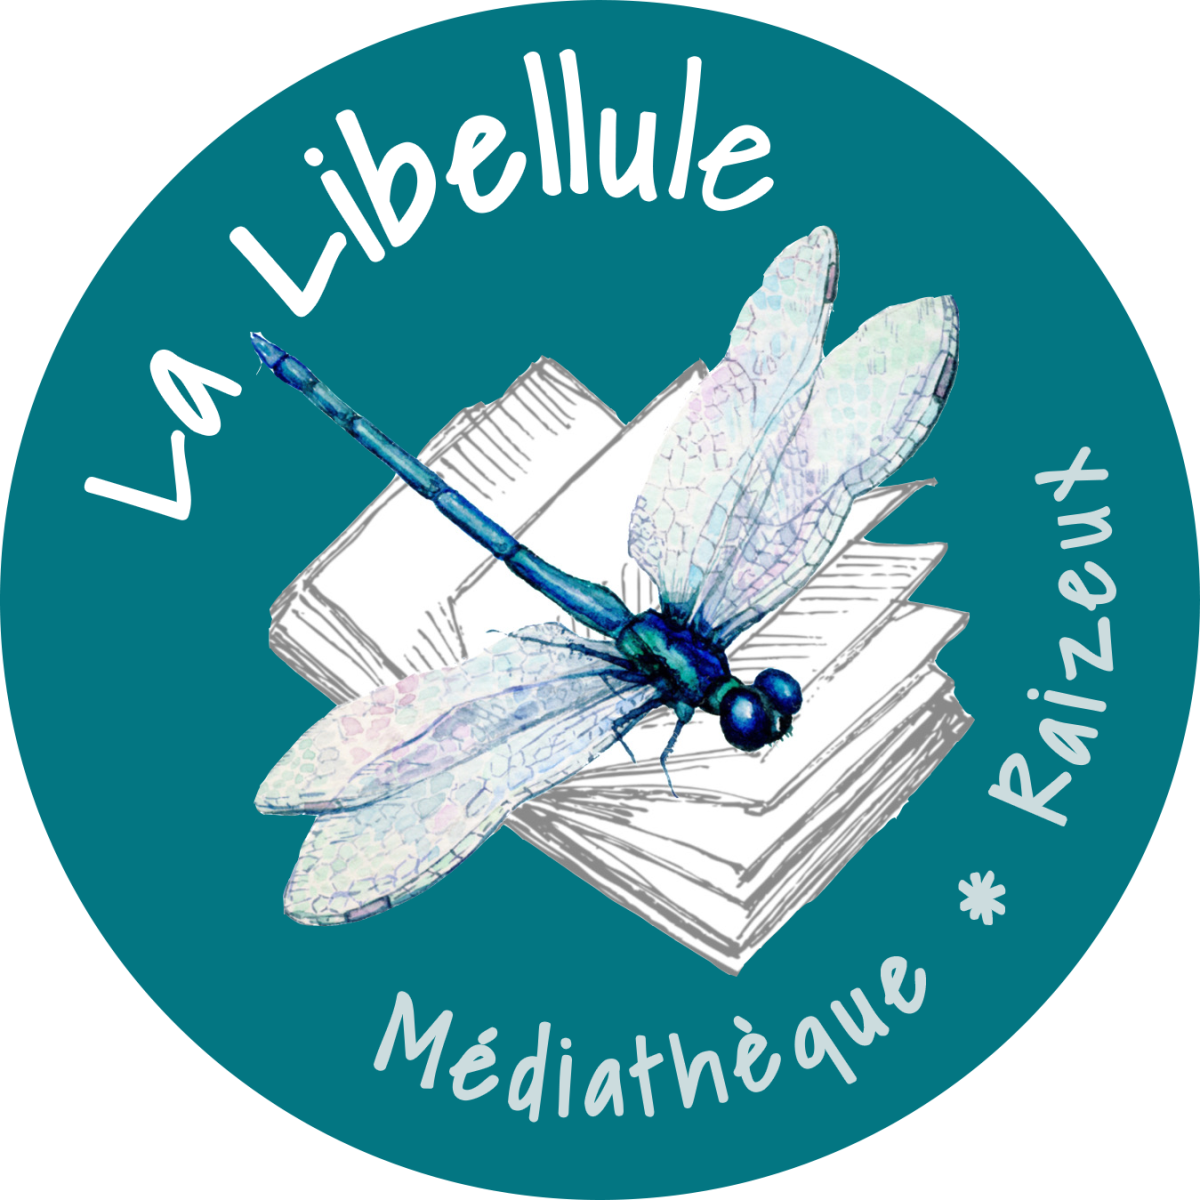 Médiathèque la Libellule - Lecture "Le p'tit cochon têtu"